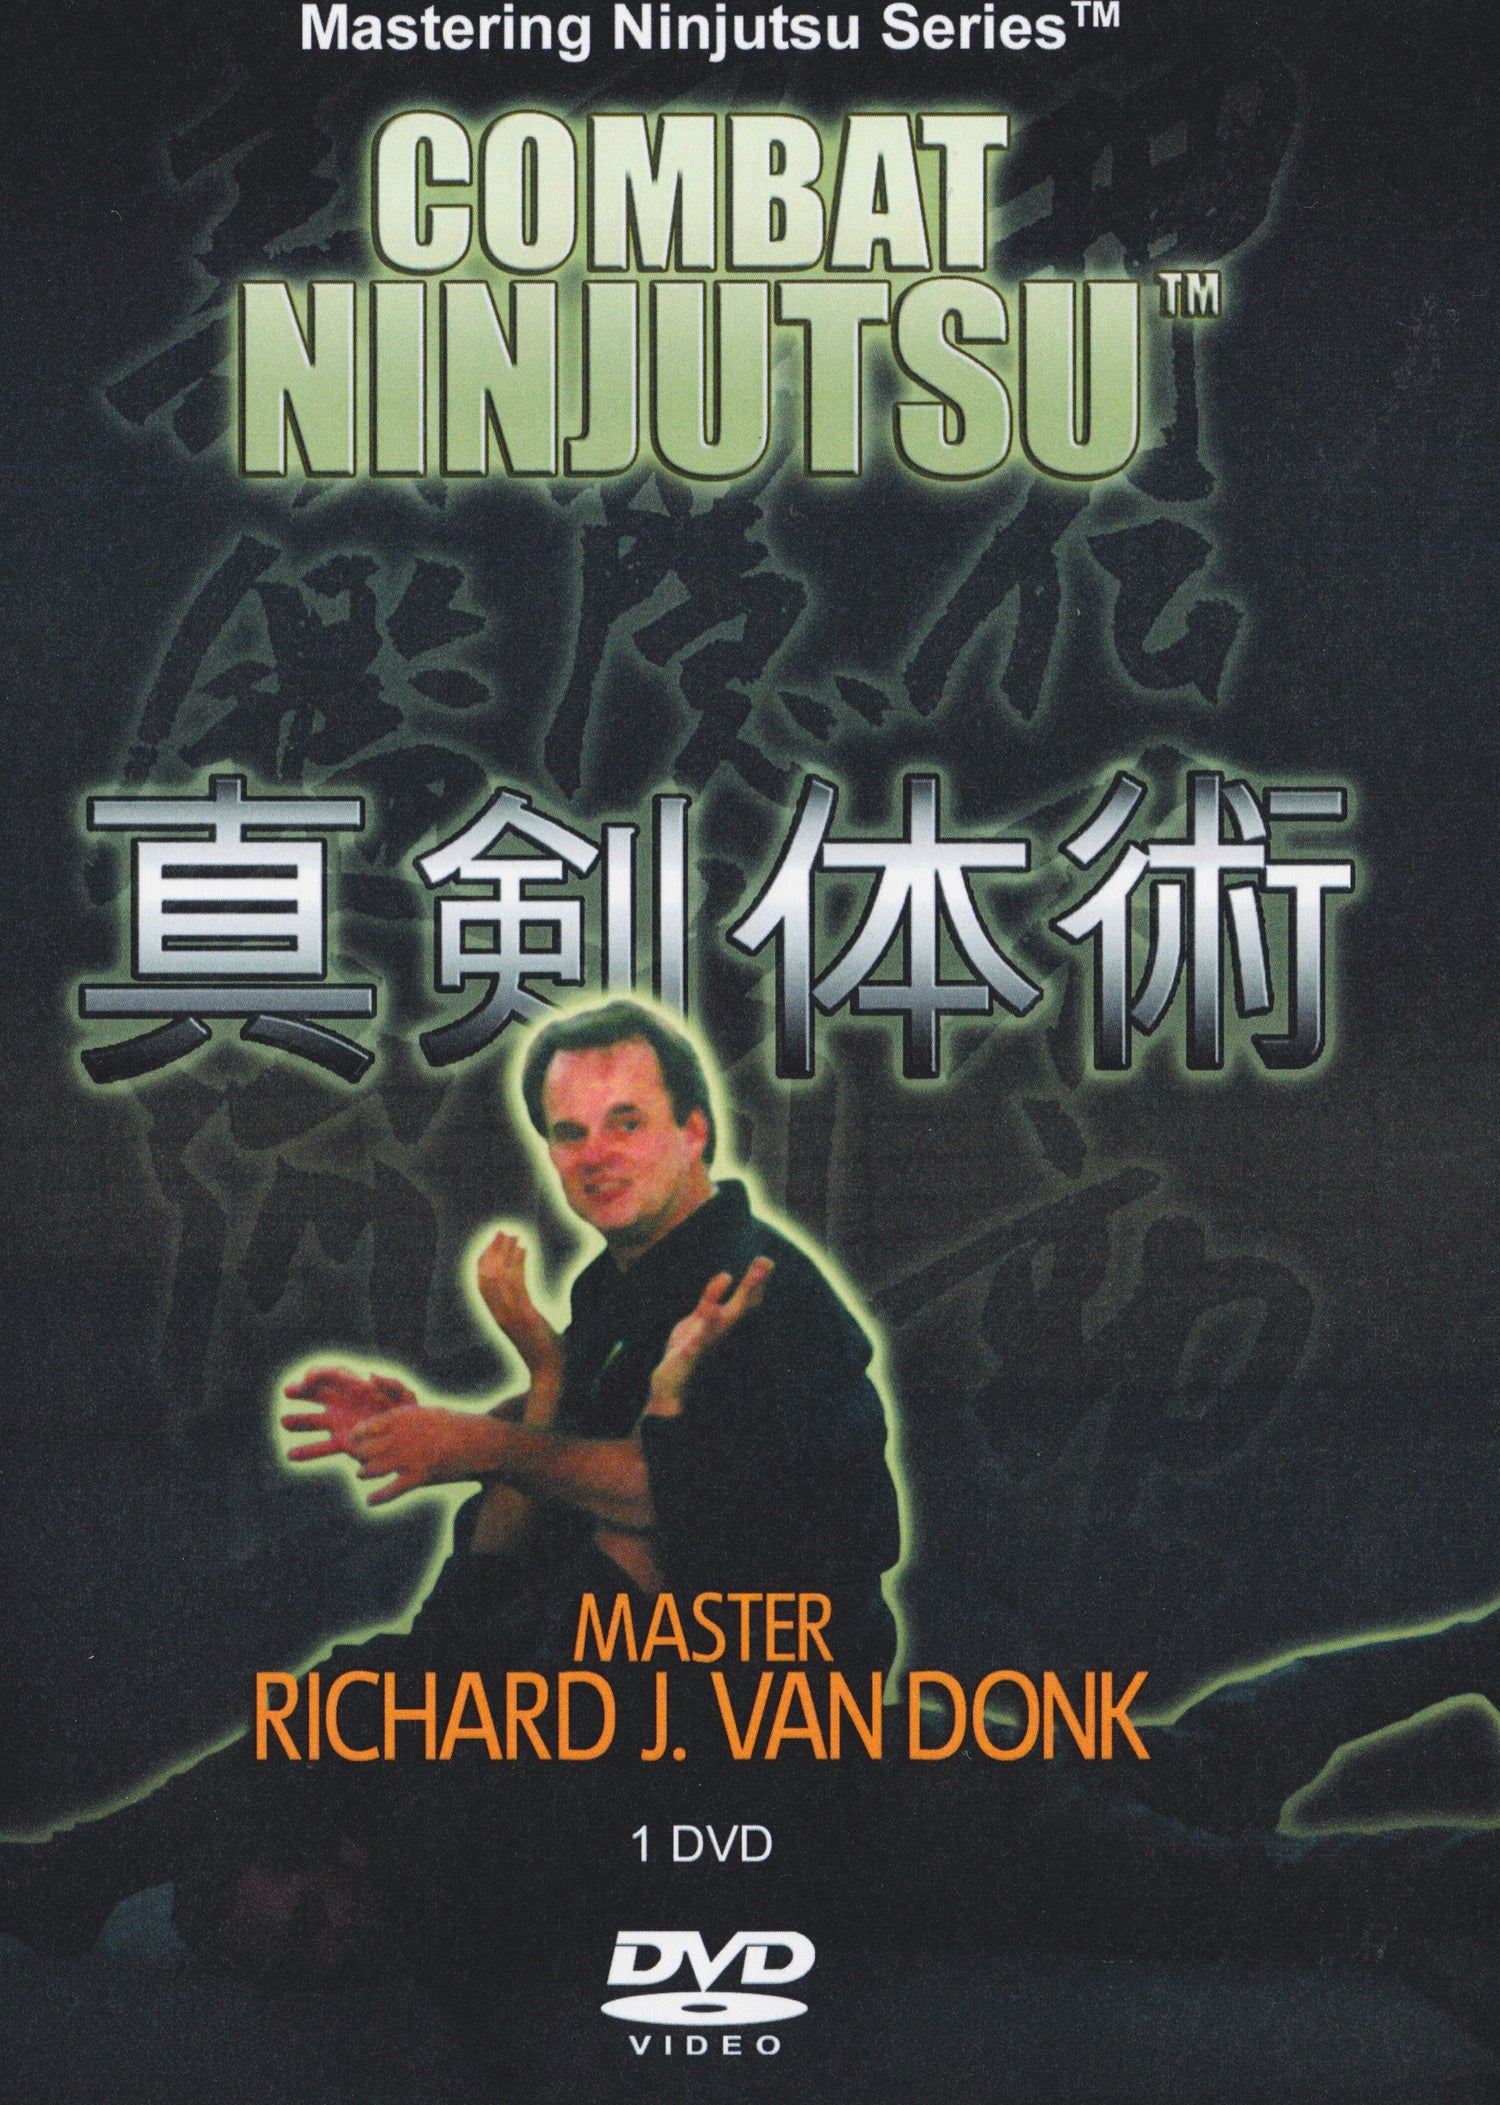 DVD de combate Ninjutsu de Richard Van Donk 